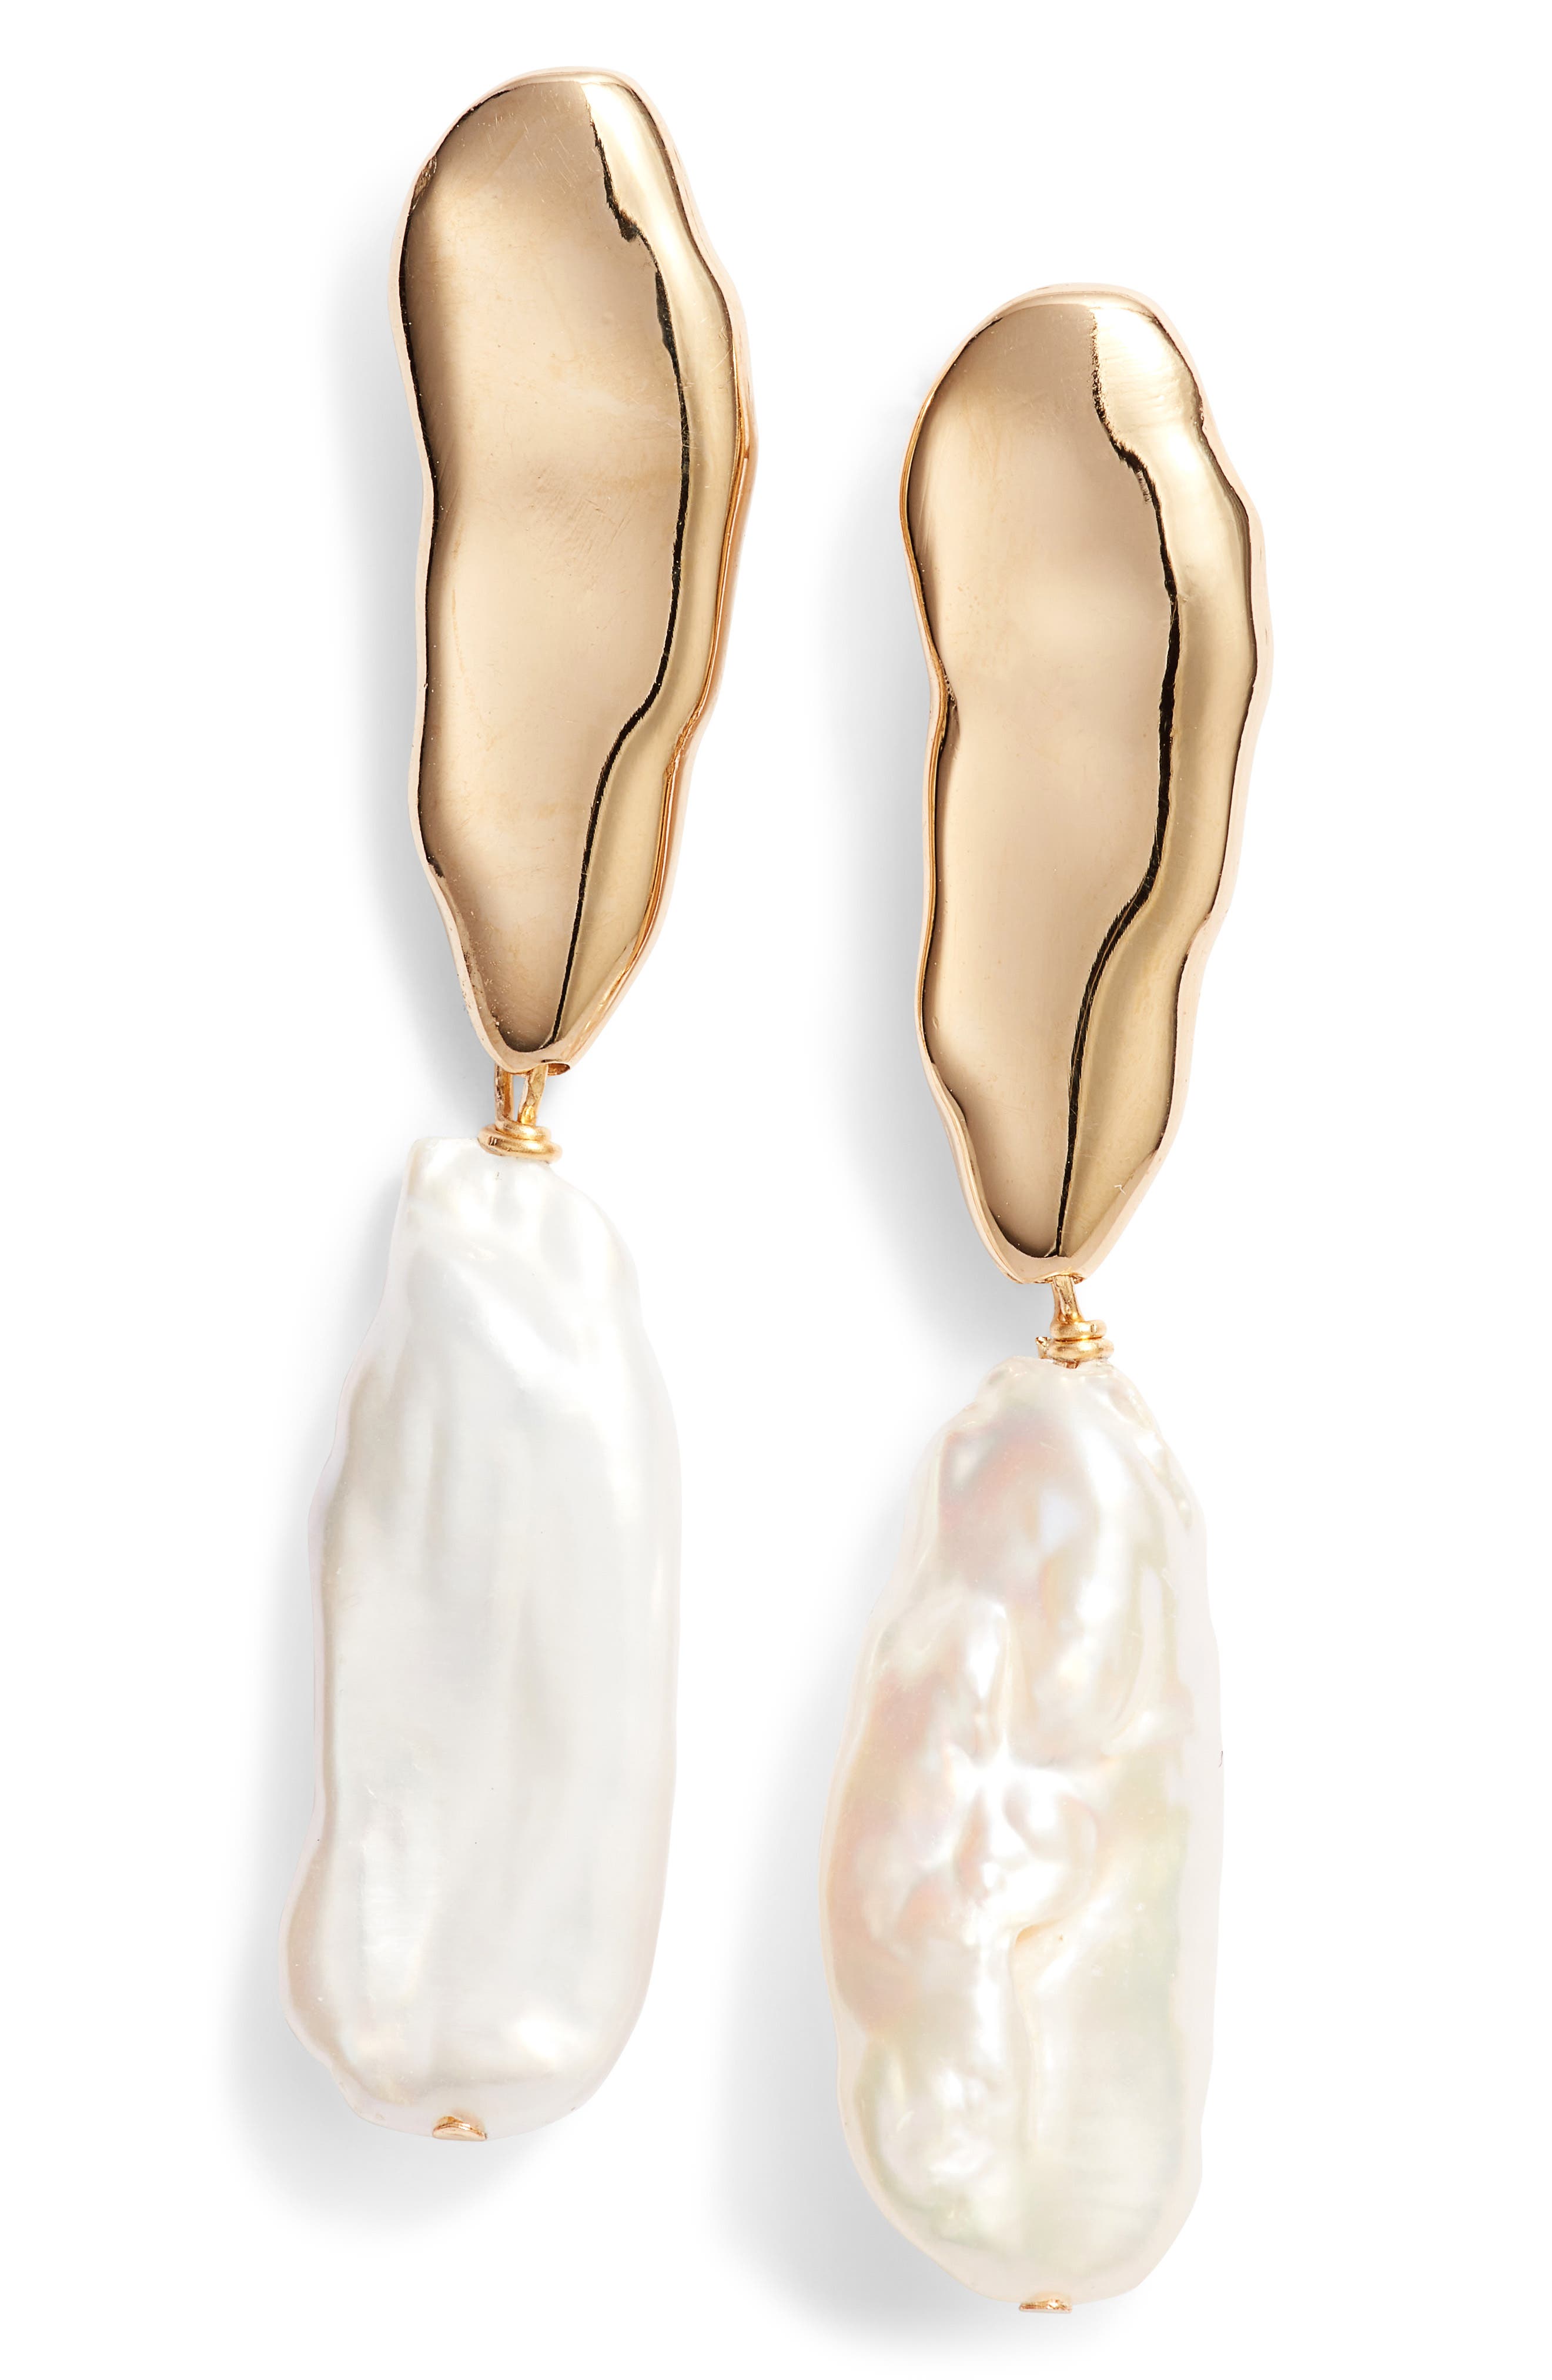 BIKO Elle Baroque Pearl Drop Earrings in Gold at Nordstrom